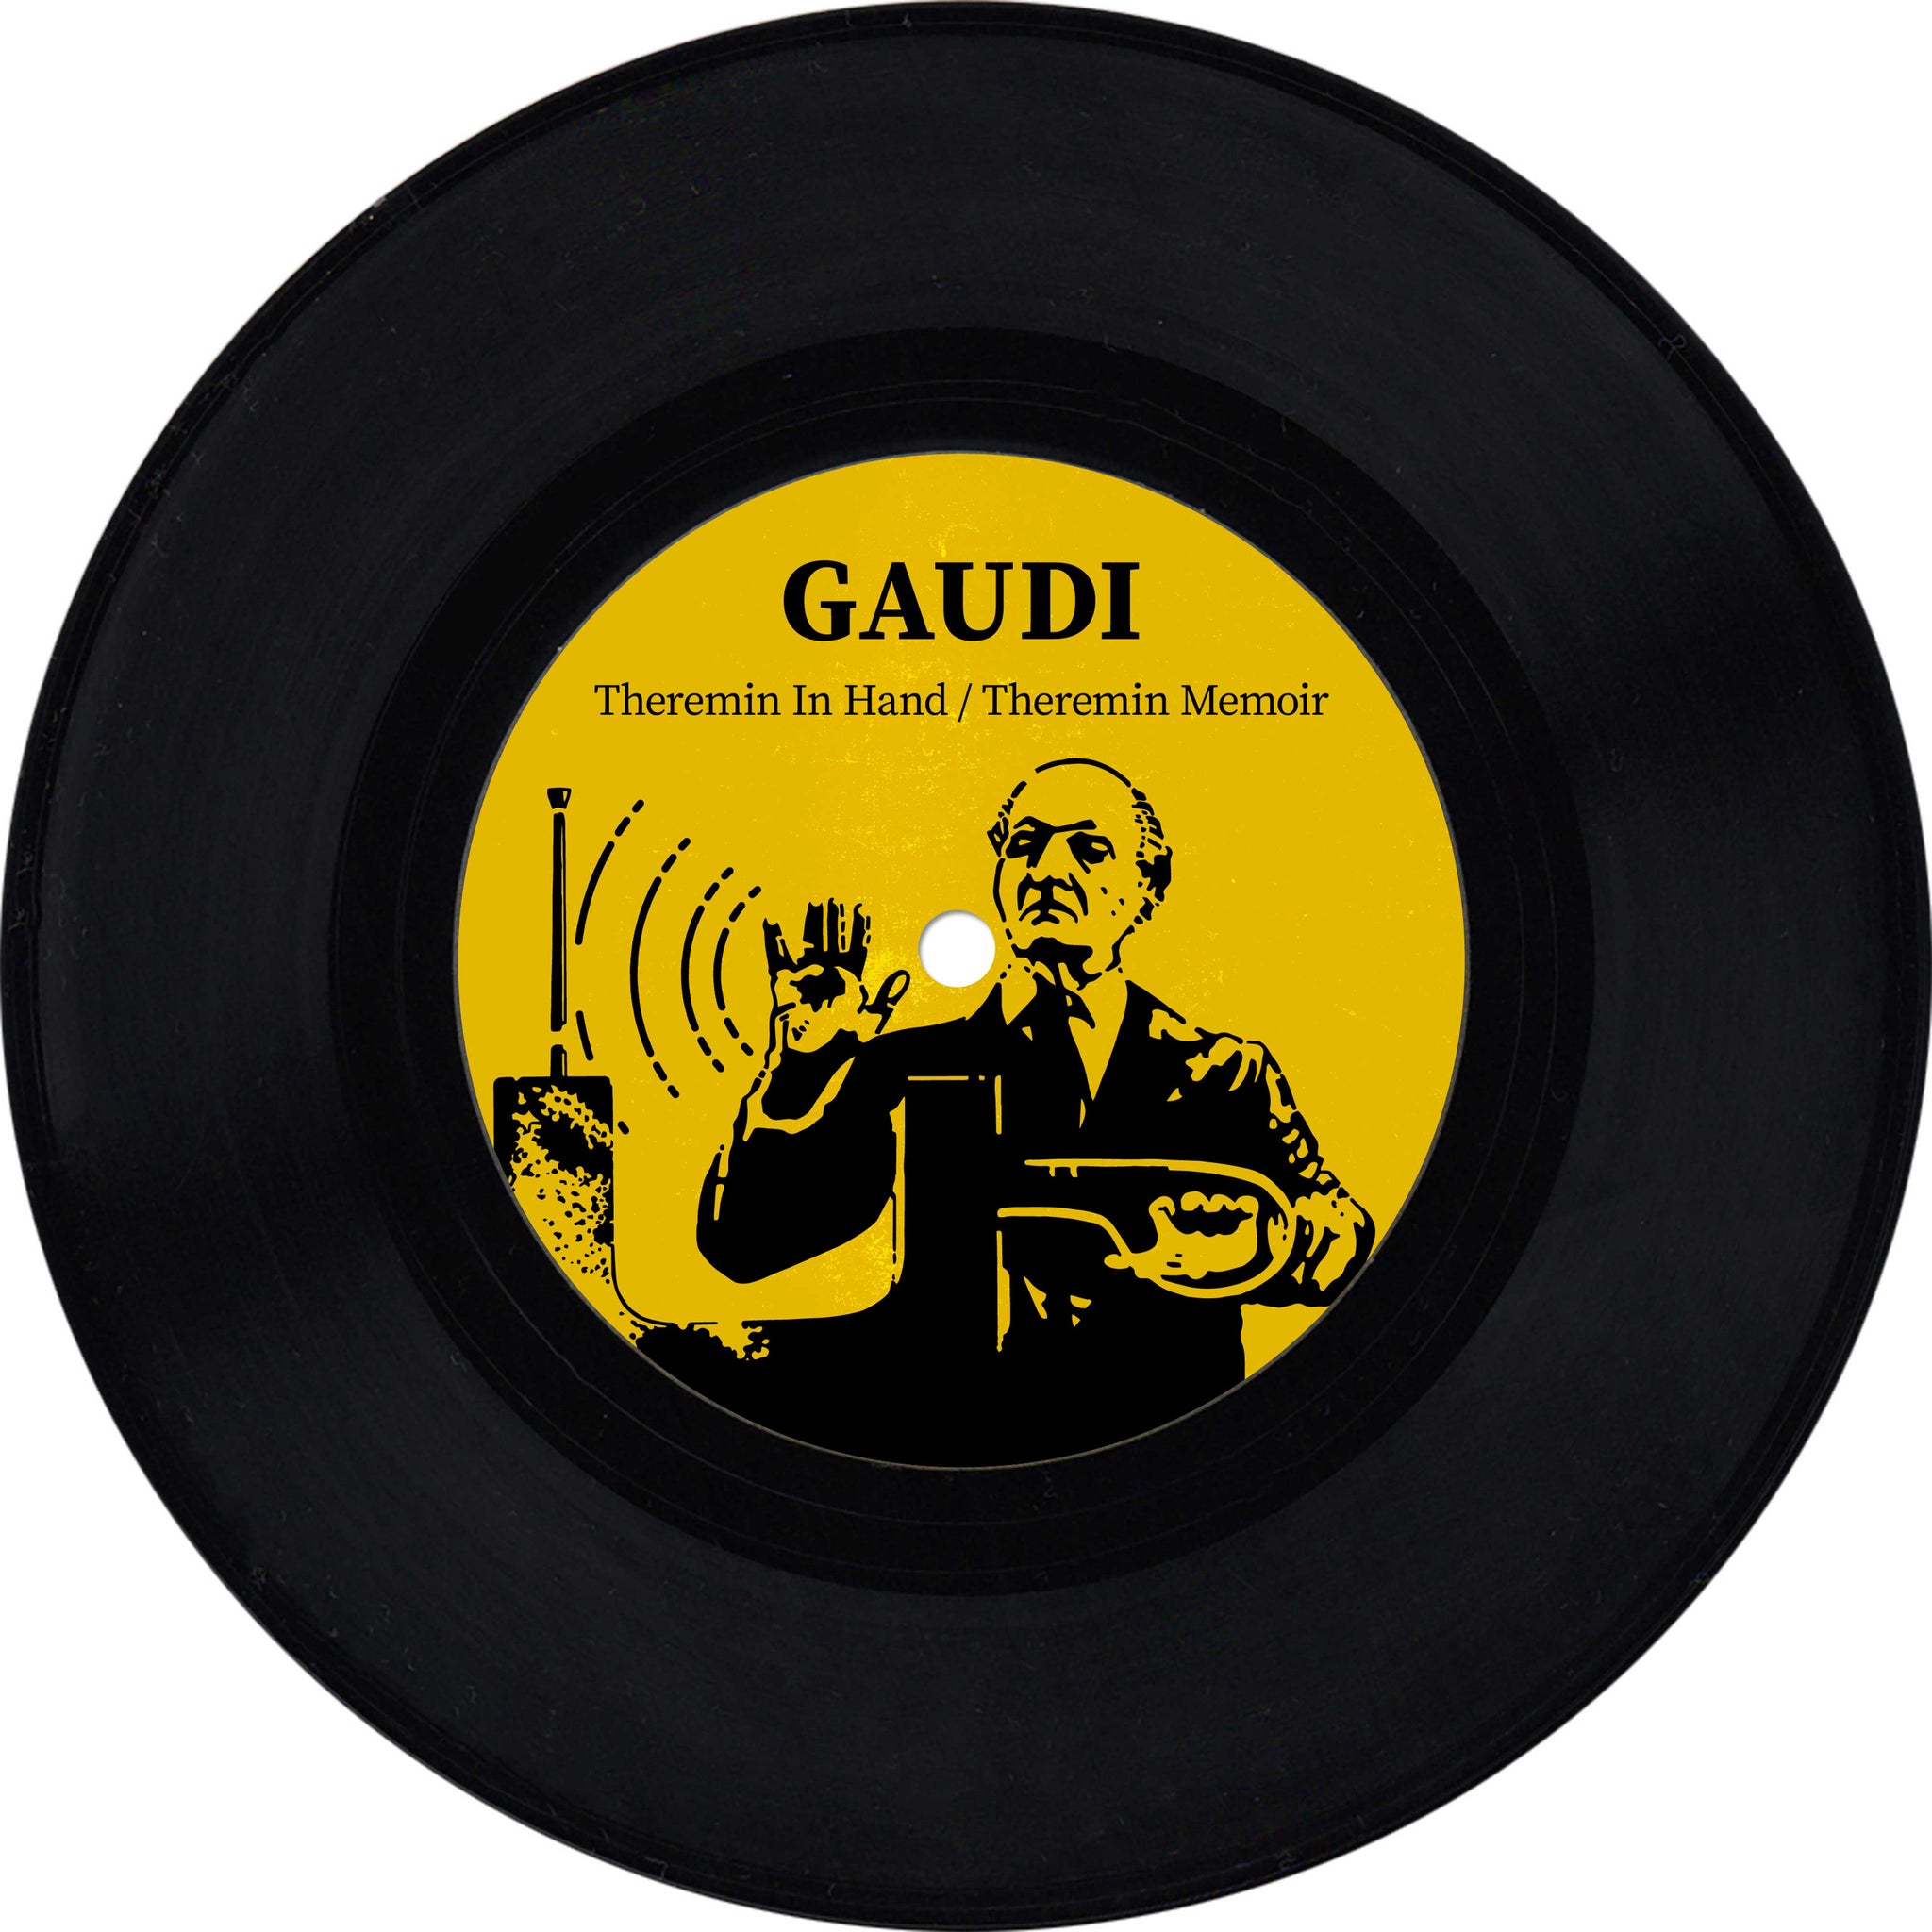 Gaudi - Theremin in Hand / Theremin Memoir (7" Vinyl)